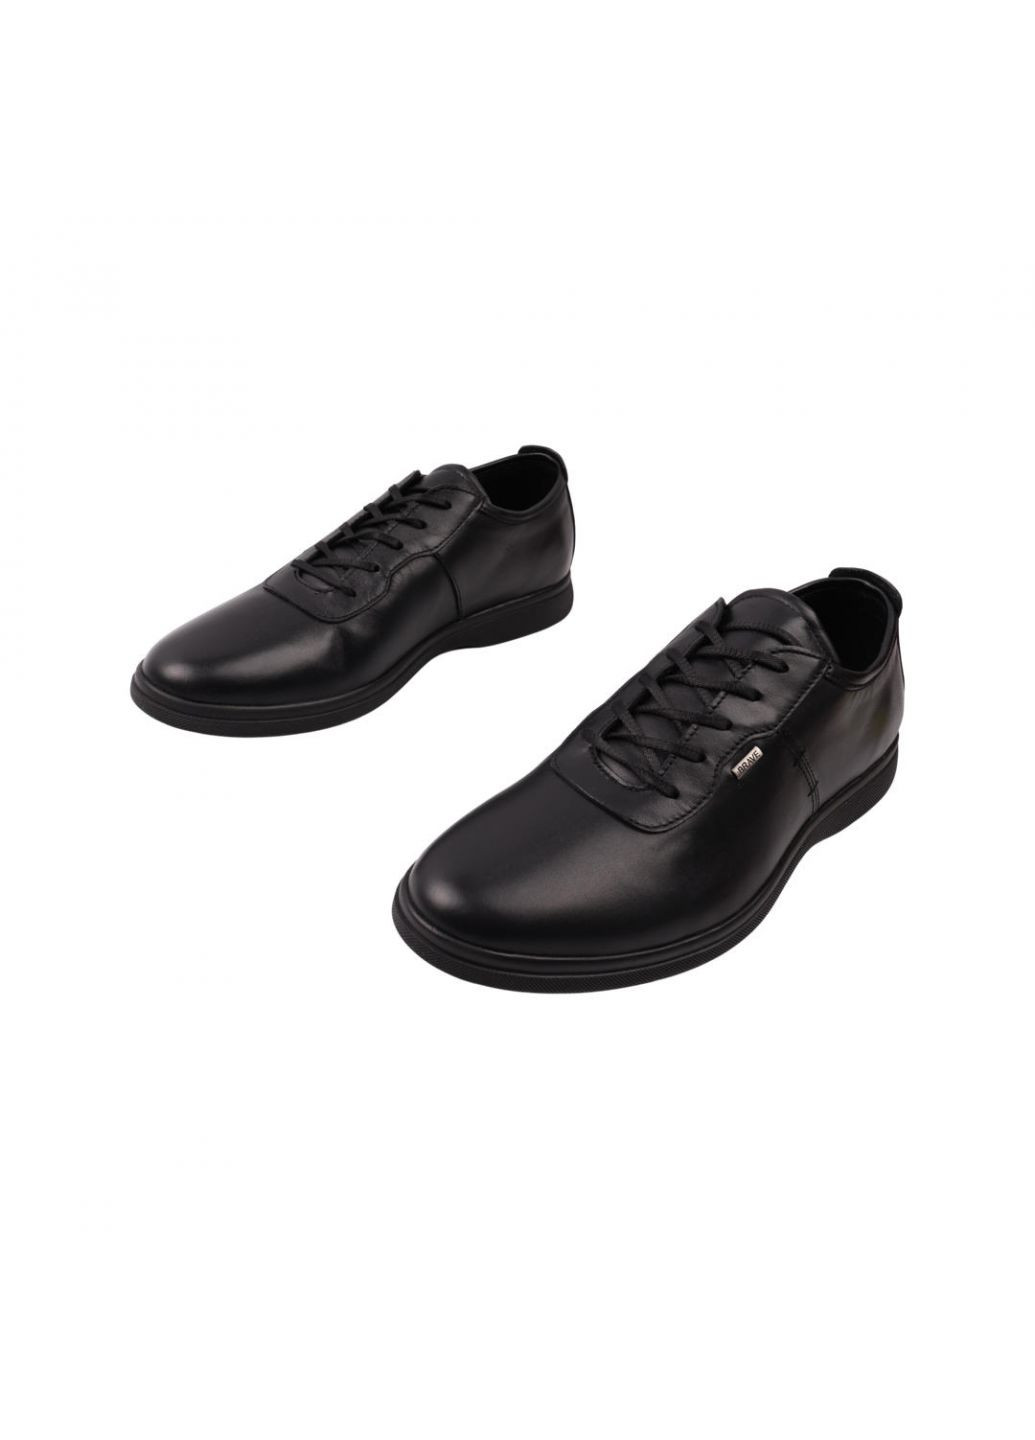 Черные кроссовки мужские черные натуральная кожа Brave 210-22DTC